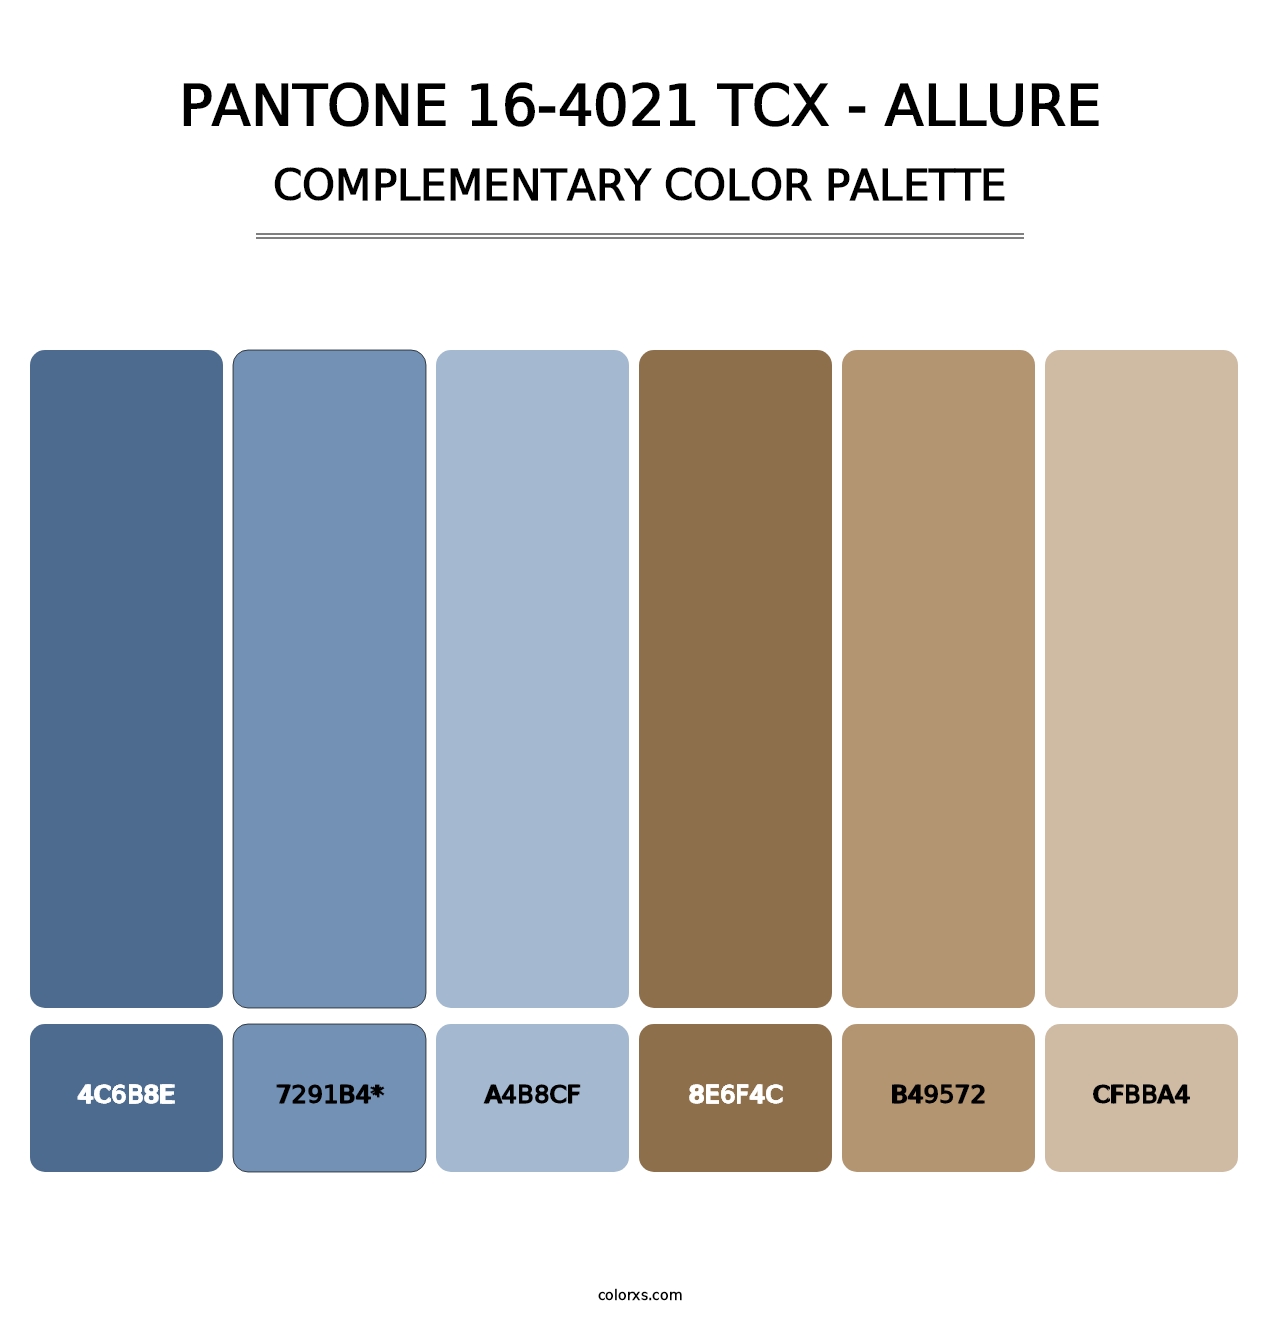 PANTONE 16-4021 TCX - Allure - Complementary Color Palette